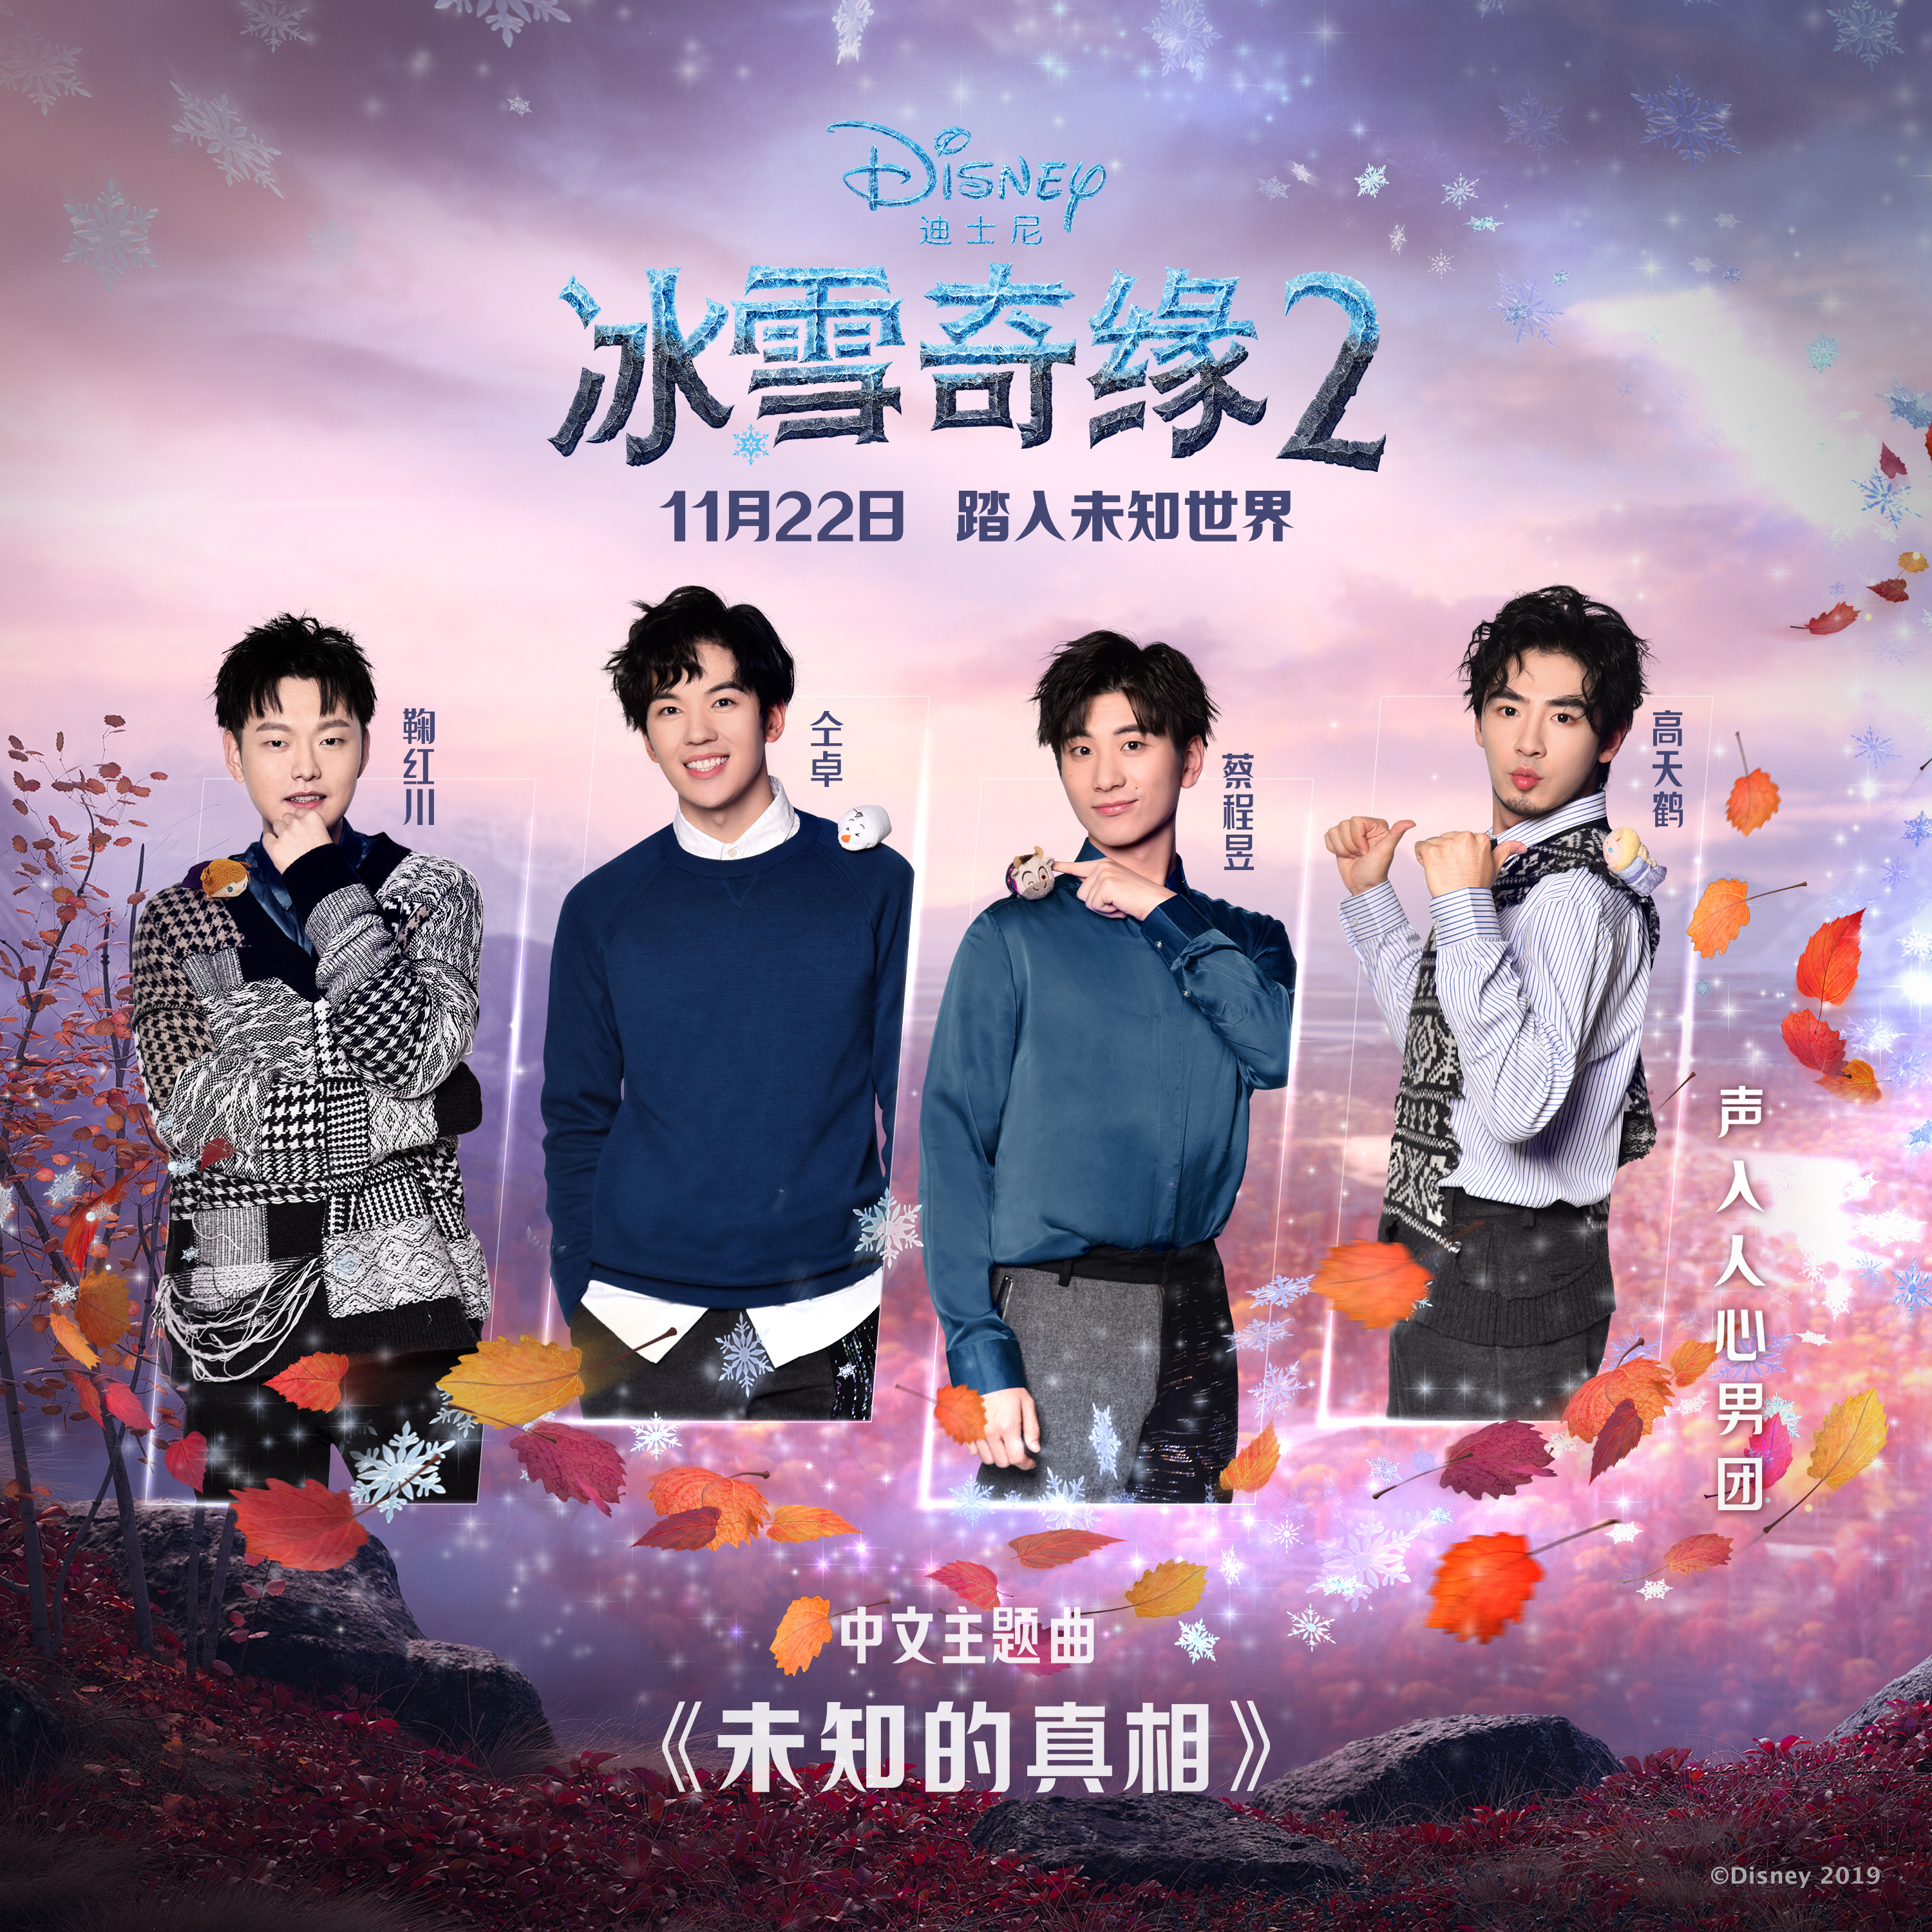 年度动画巨制《冰雪奇缘2》发表中文主题曲《未知的真实》